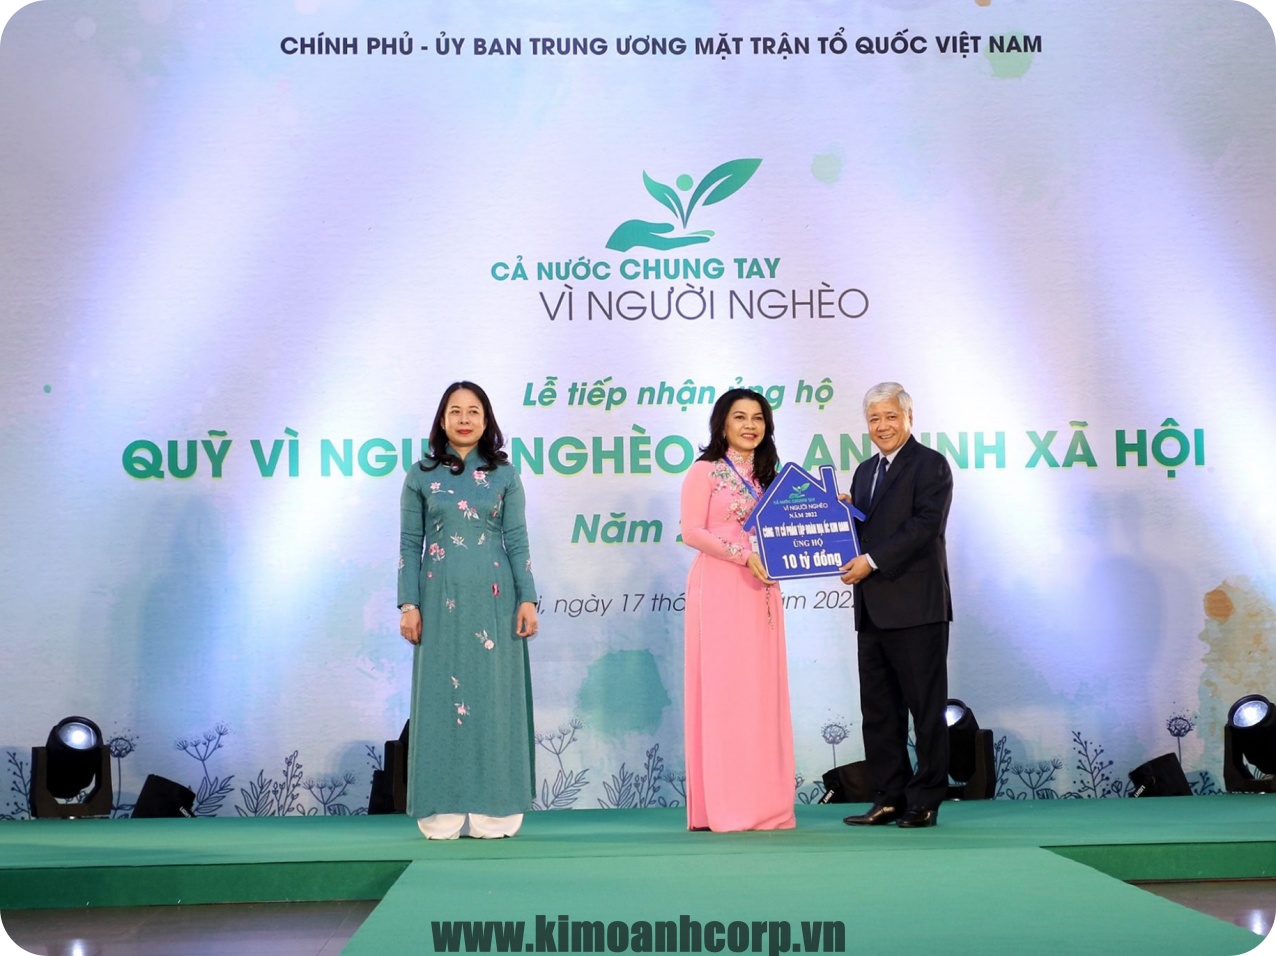 Ông Đỗ Văn Chiến Chủ tịch UB Trung ương MTTQ Việt Nam đại diện nhận bảng tượng trưng 10 tỷ đồng từ Quỹ Từ thiện Kim Oanh đóng góp.